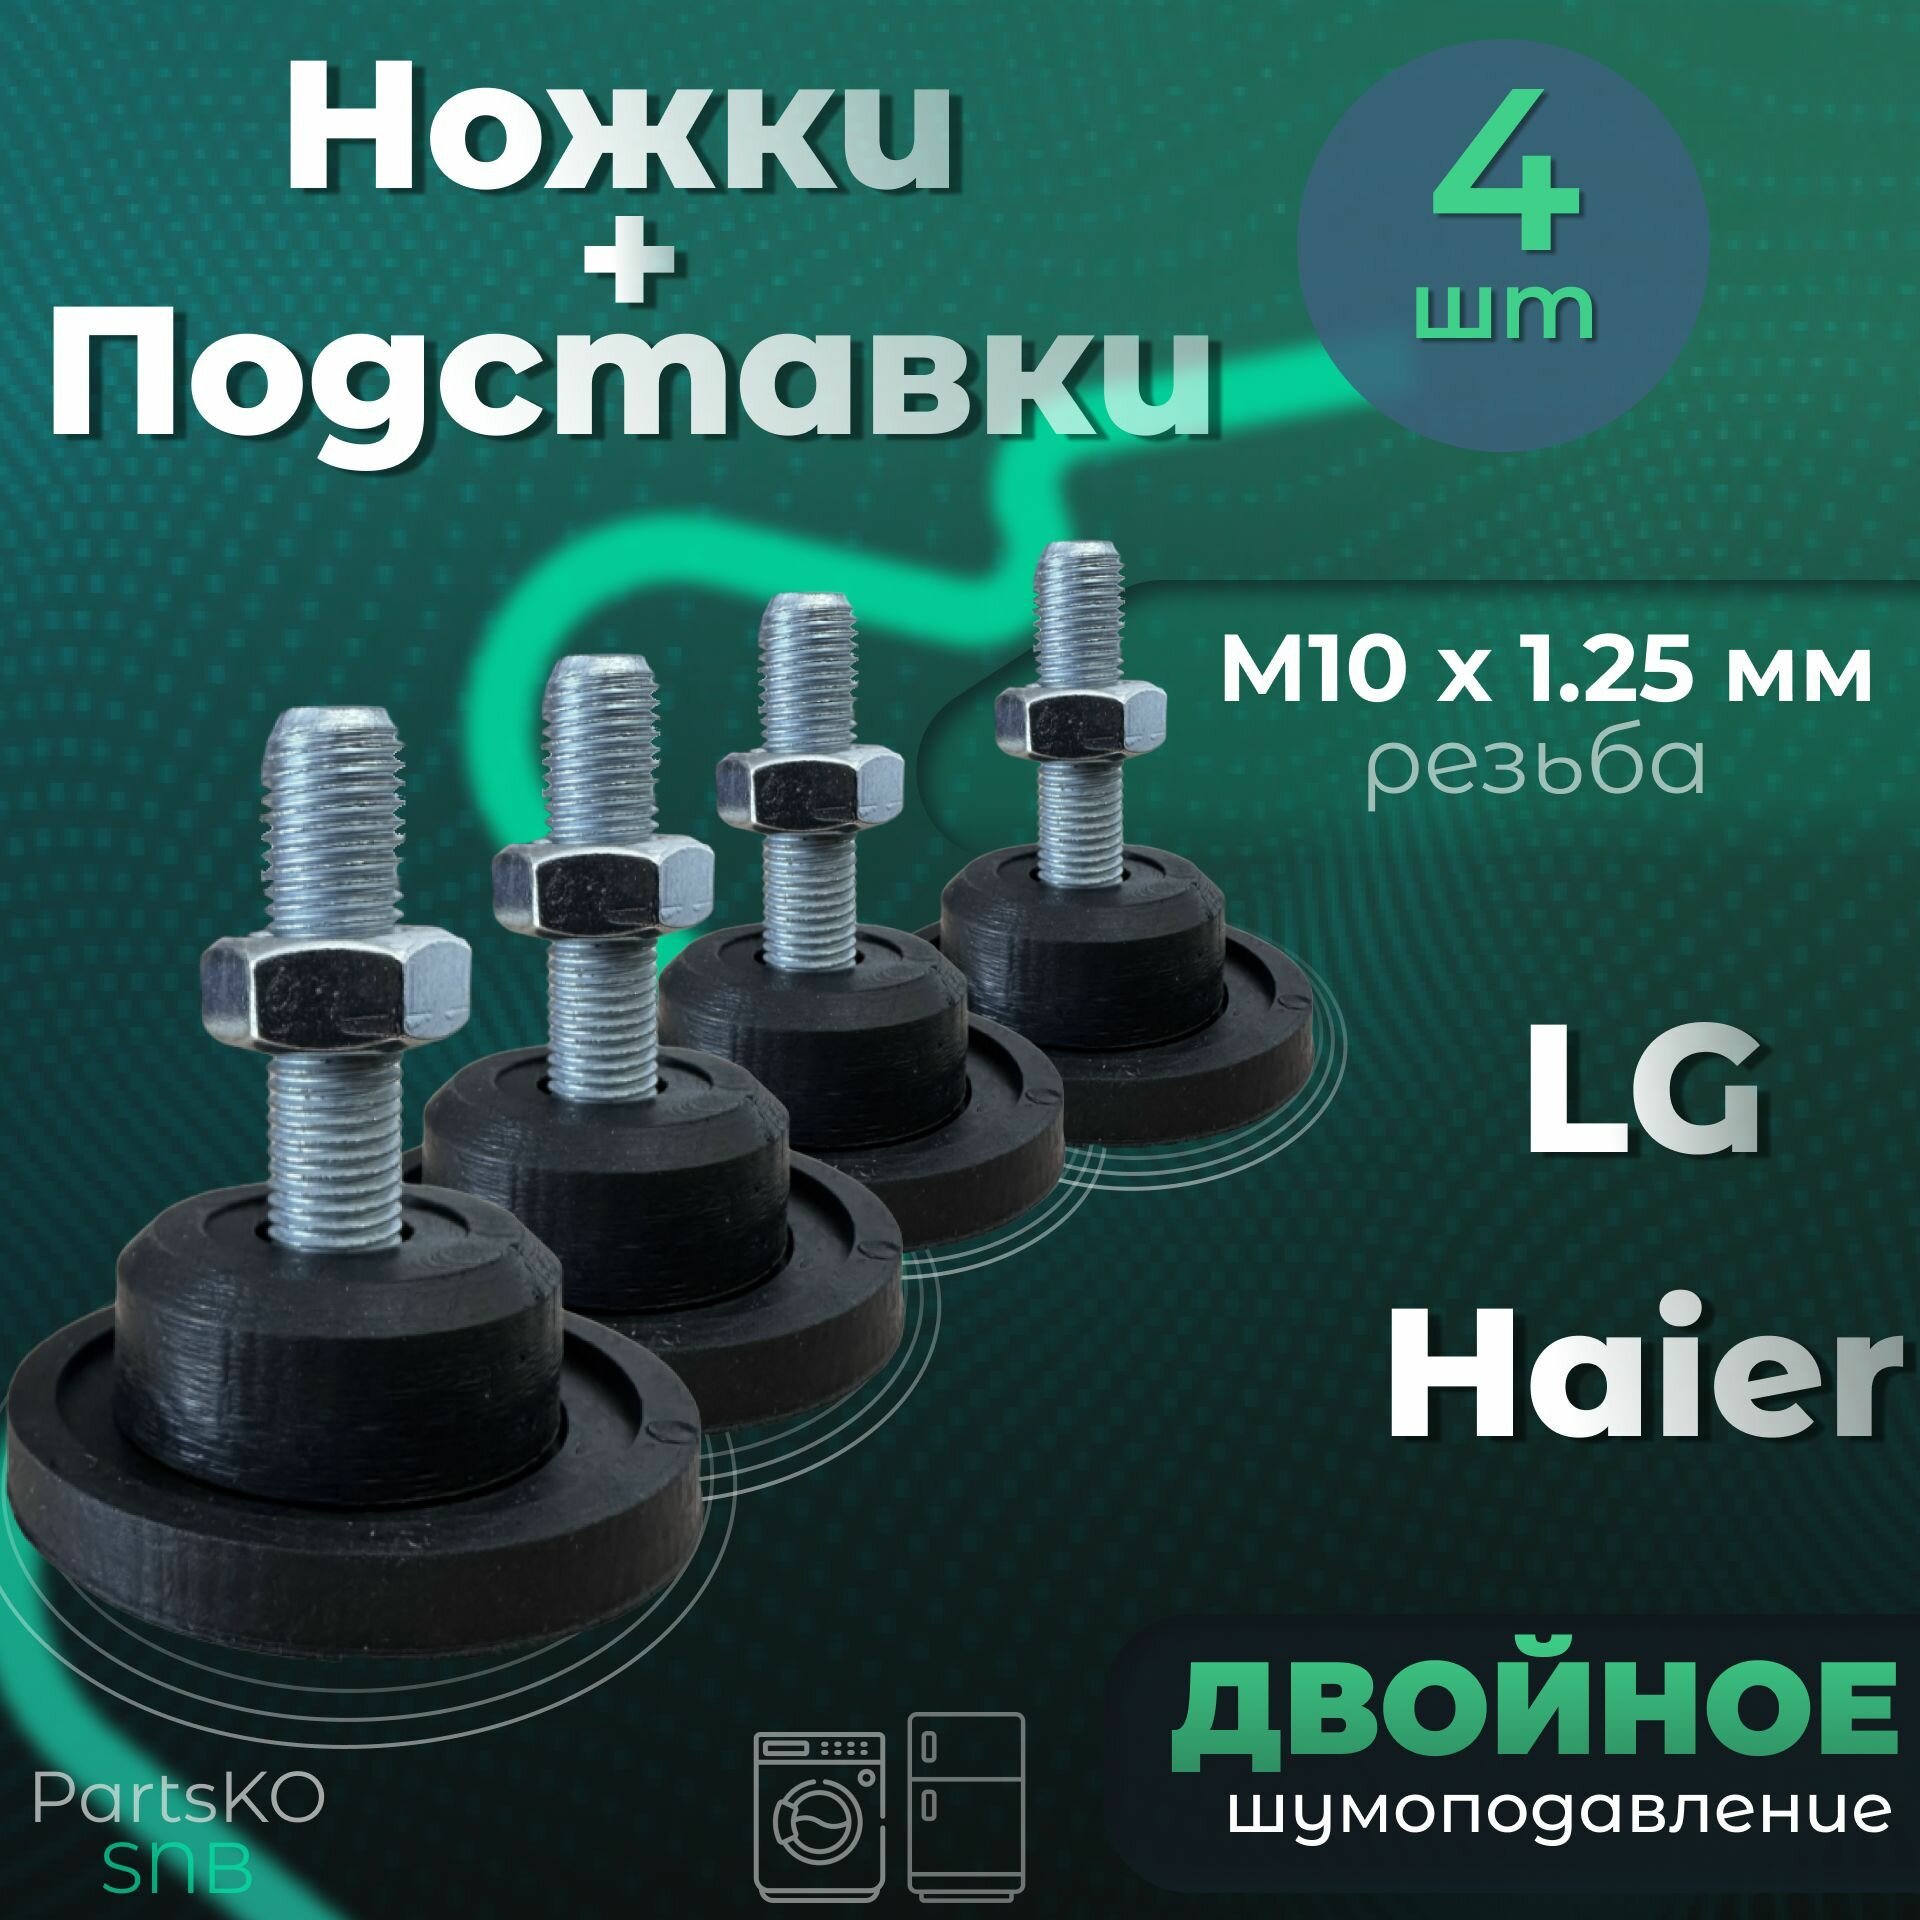 Комплект Подставка / Ножки для стиральной машины LG Haier. Резьба М10 х 1.25 мм Высота 50 мм. Черного цвета. Комплект 4 шт.